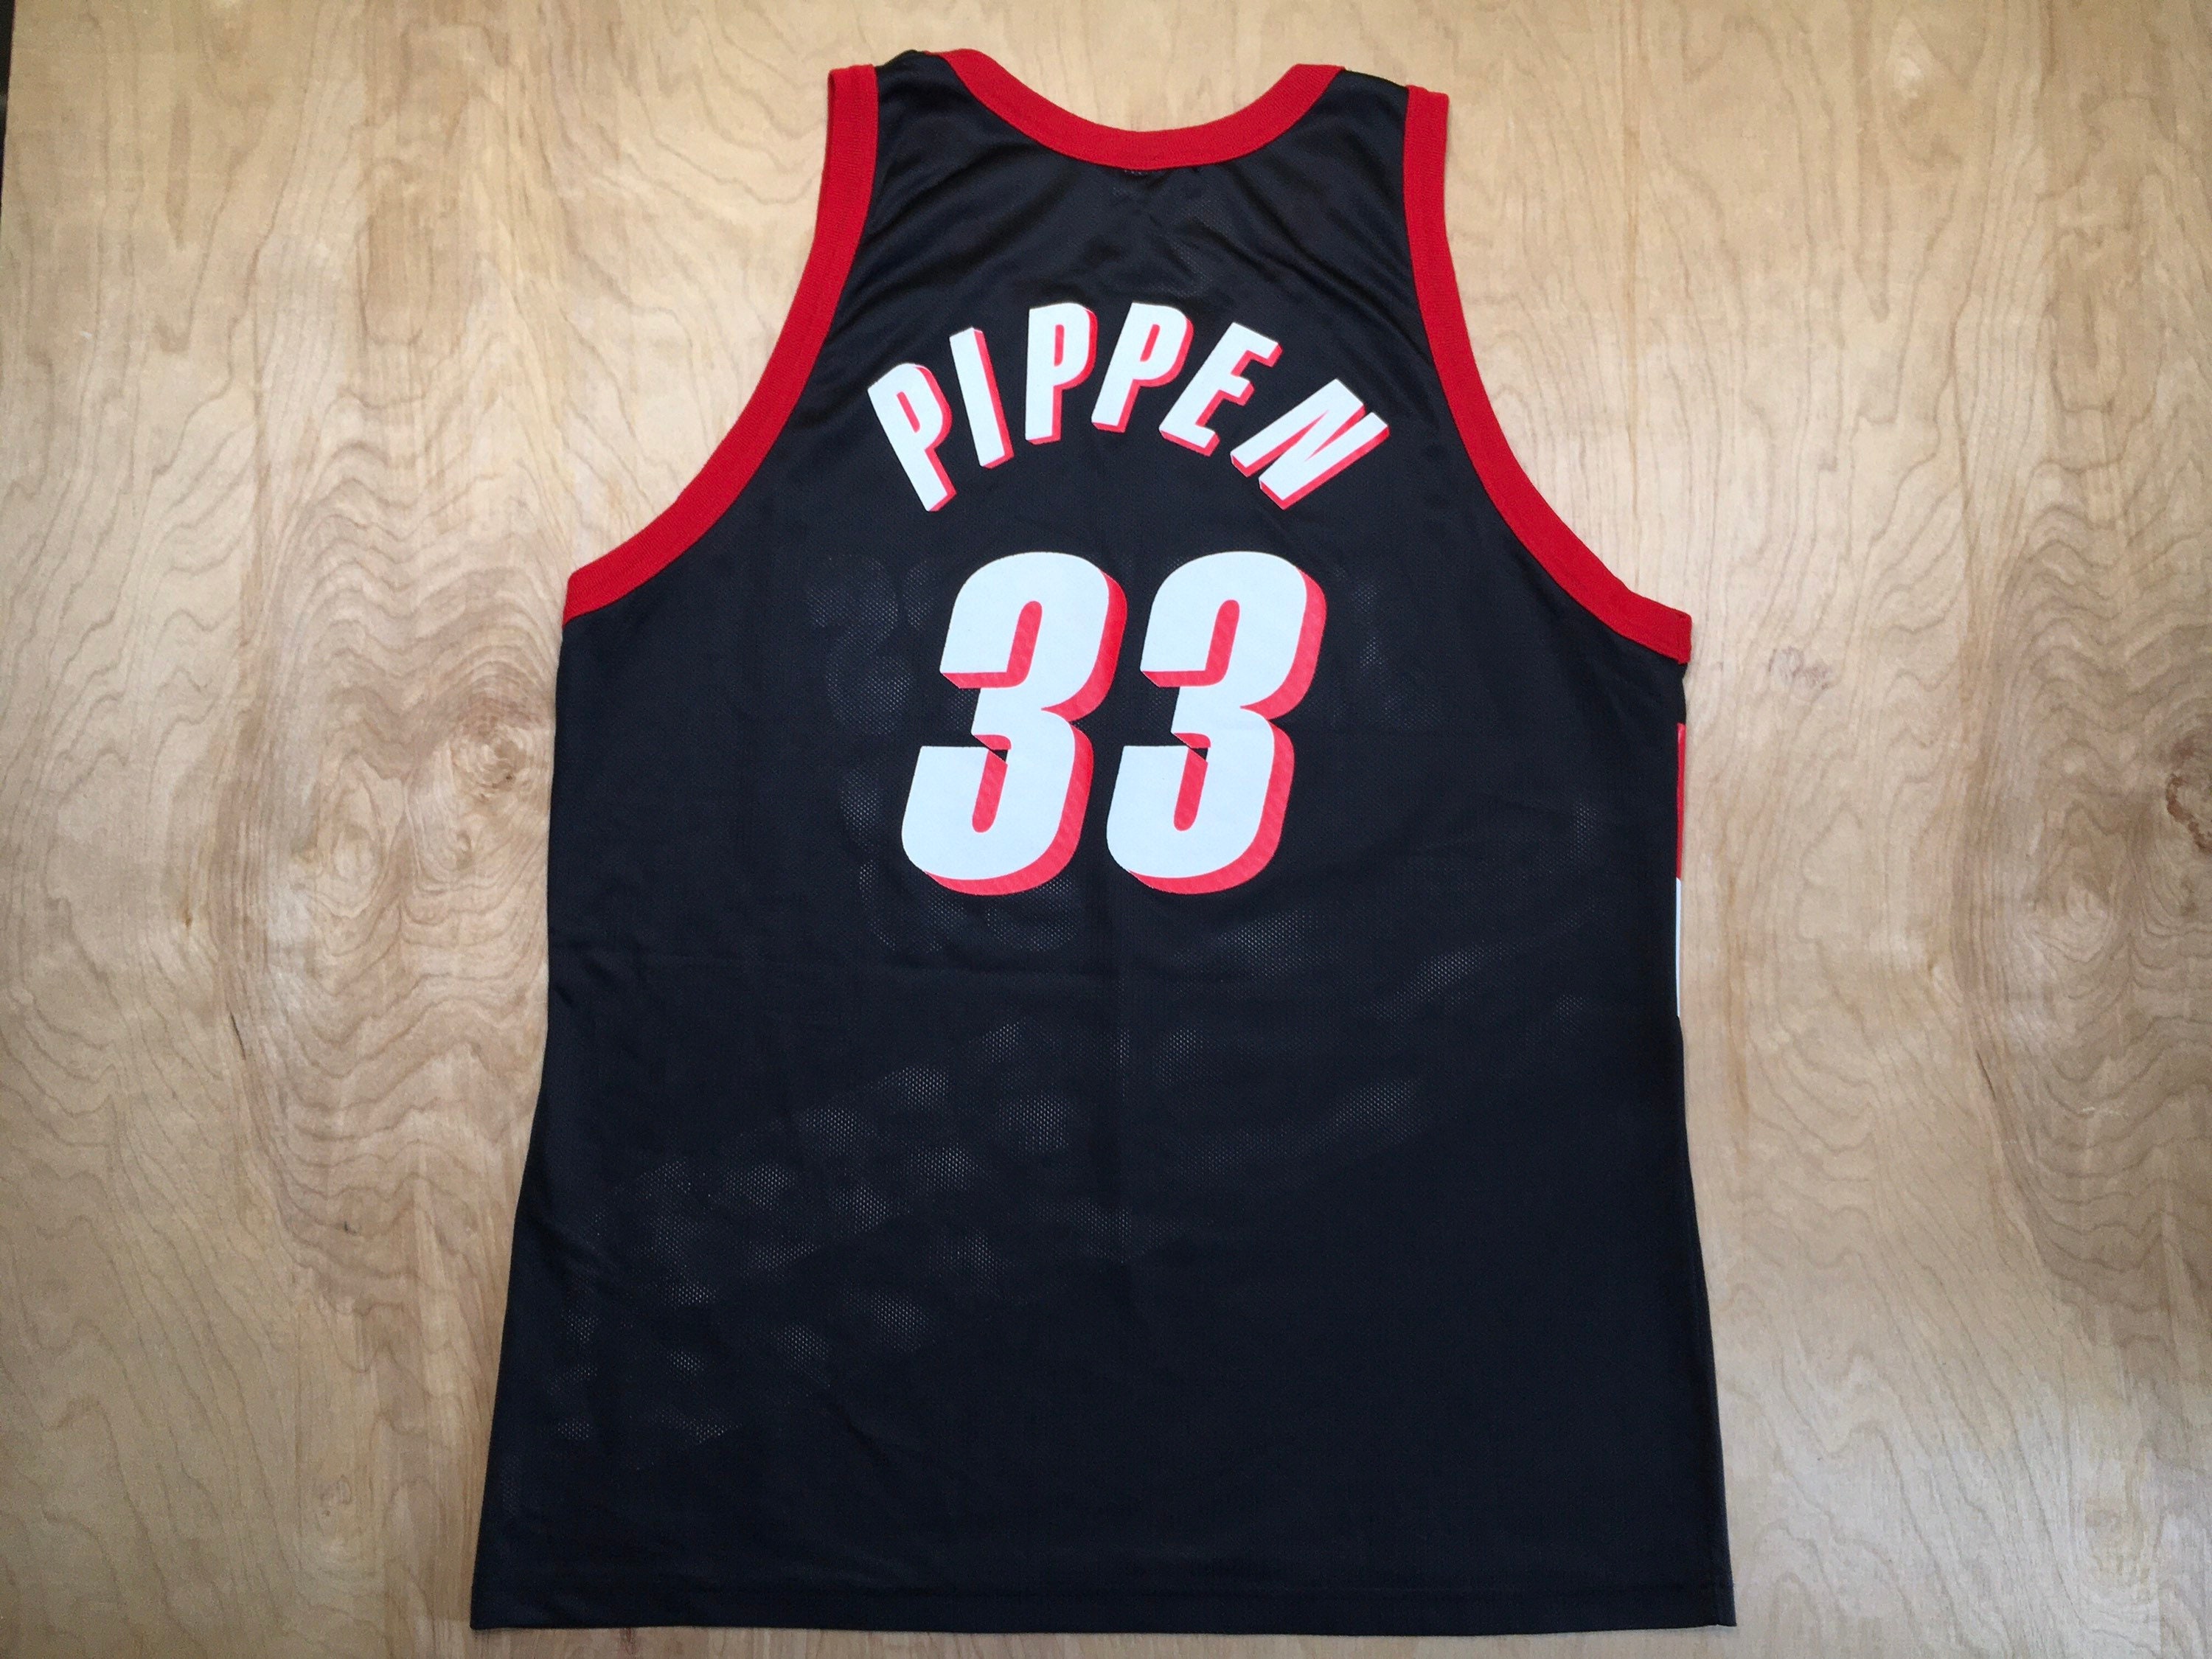 Nike Portland Blazers Scottie Pippen Road Jersey